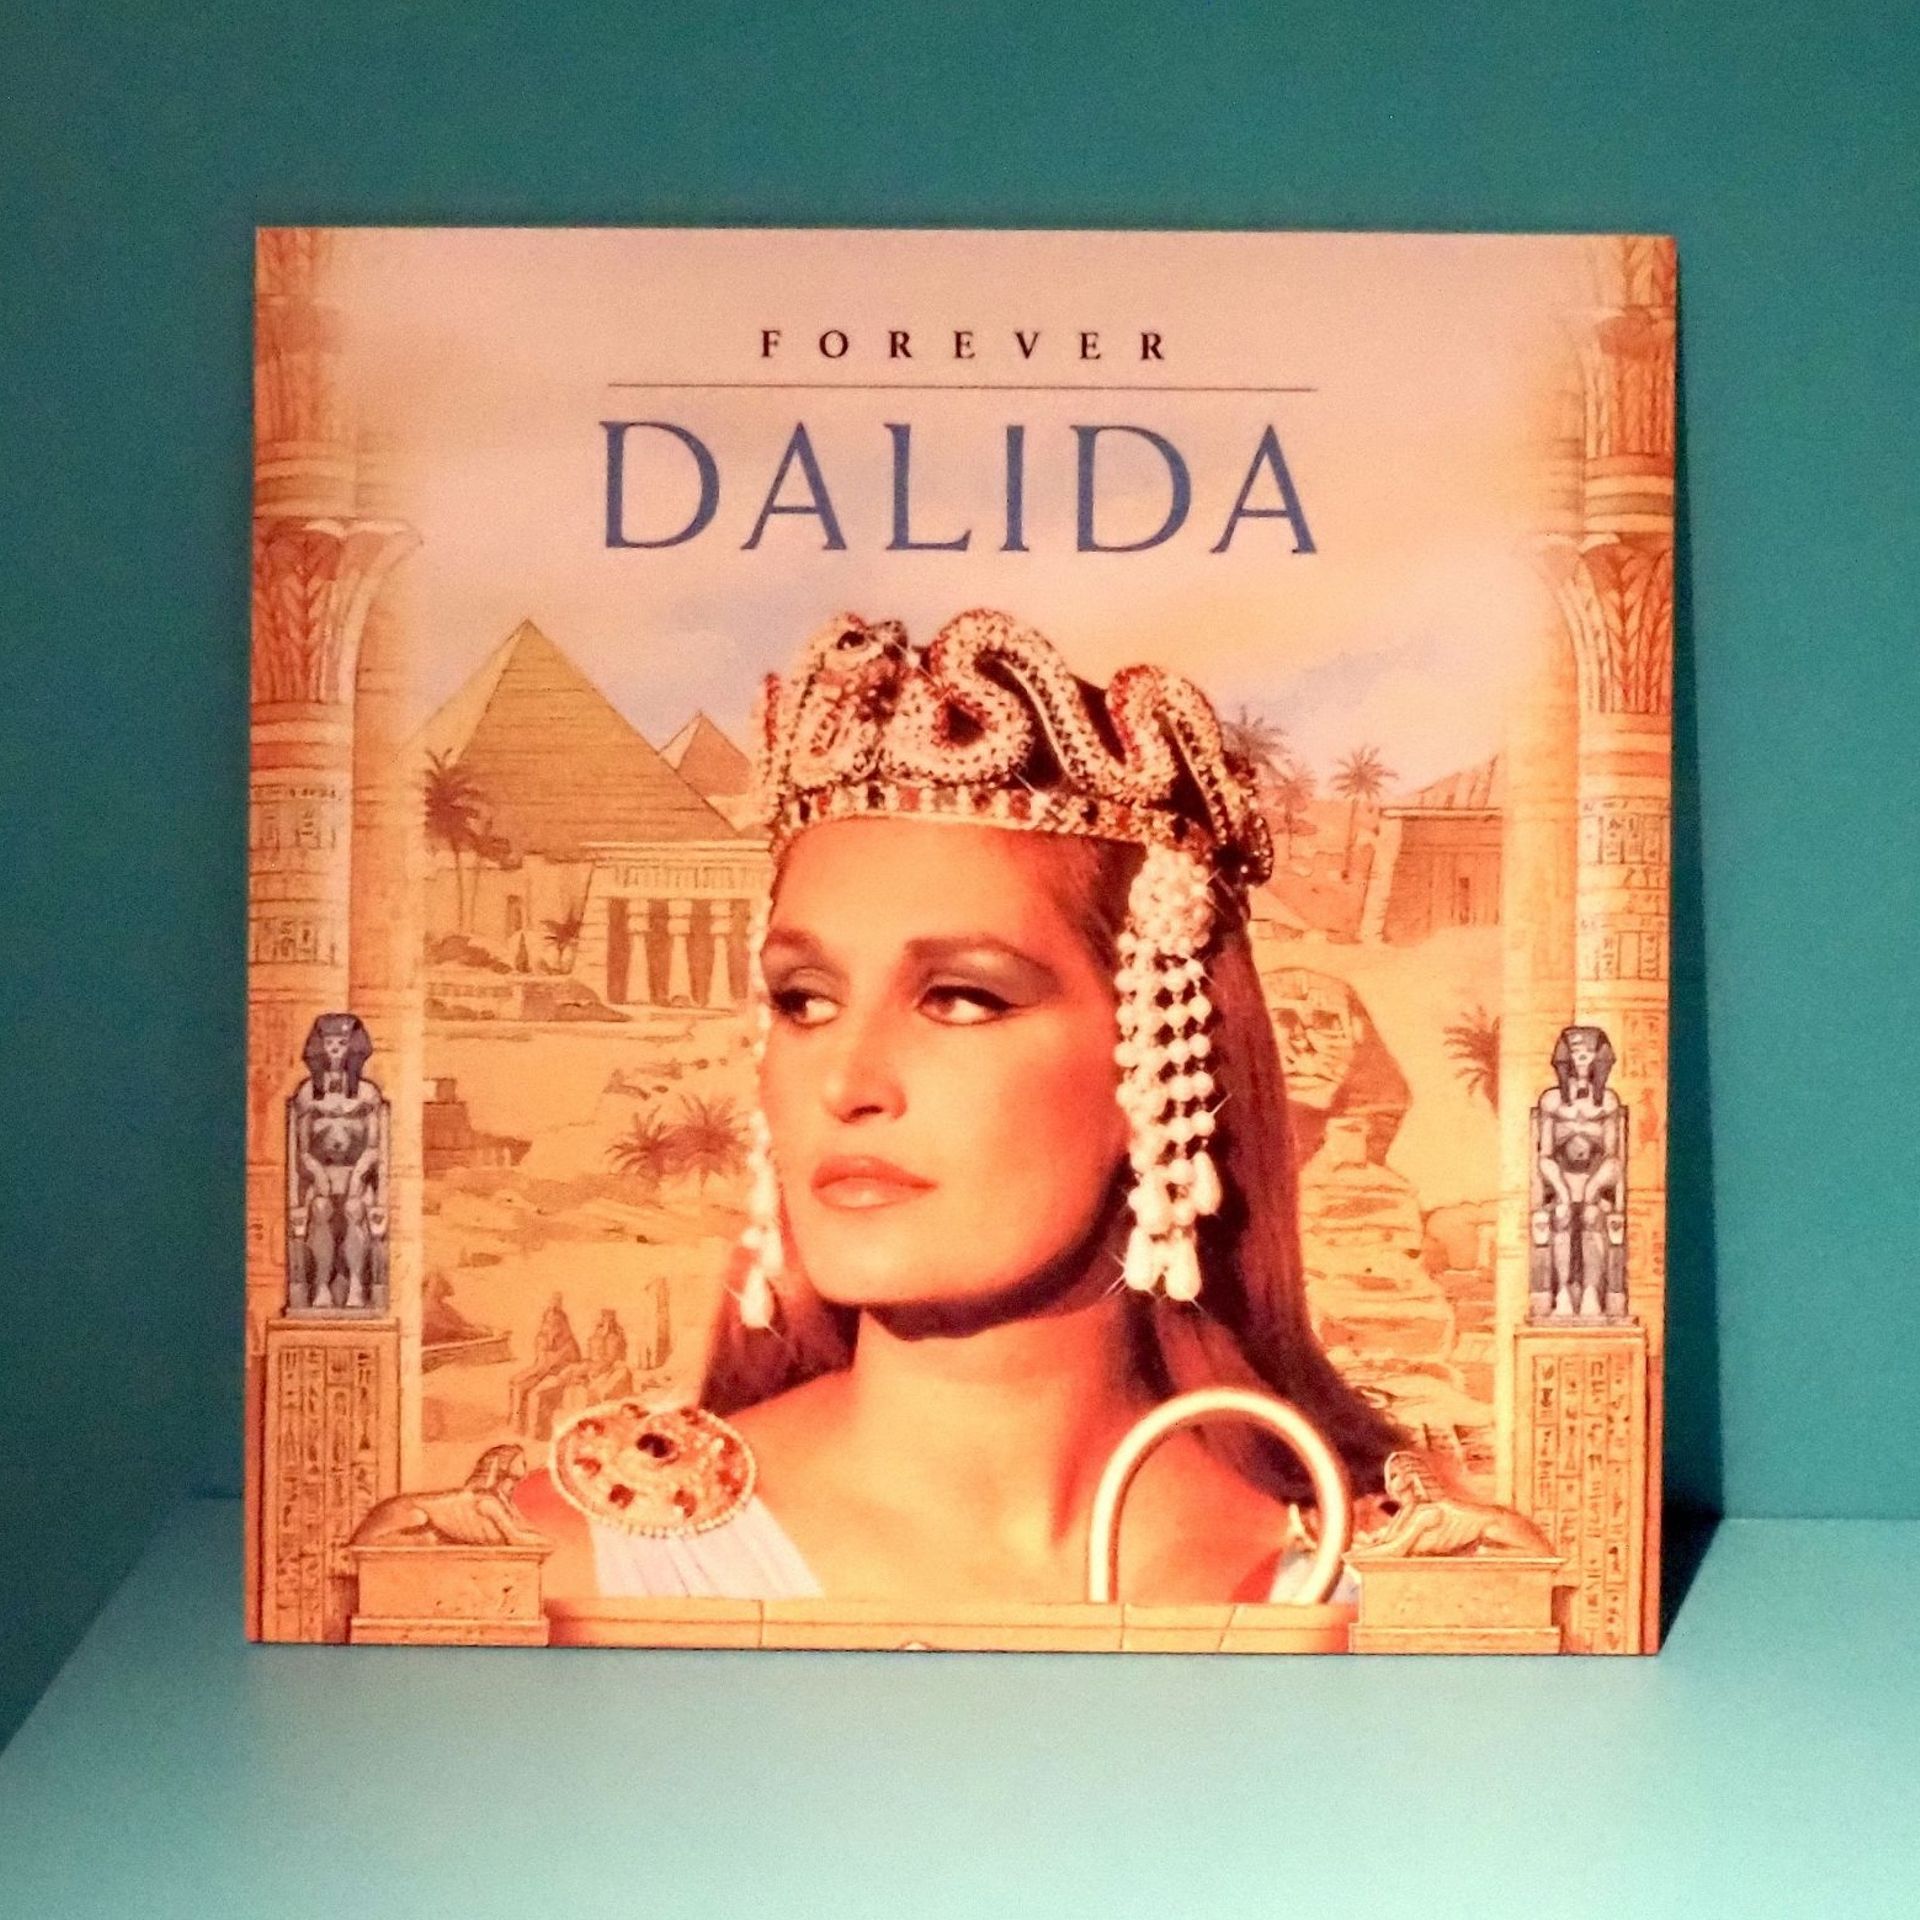 Dalida Forever, CD best of (2004)